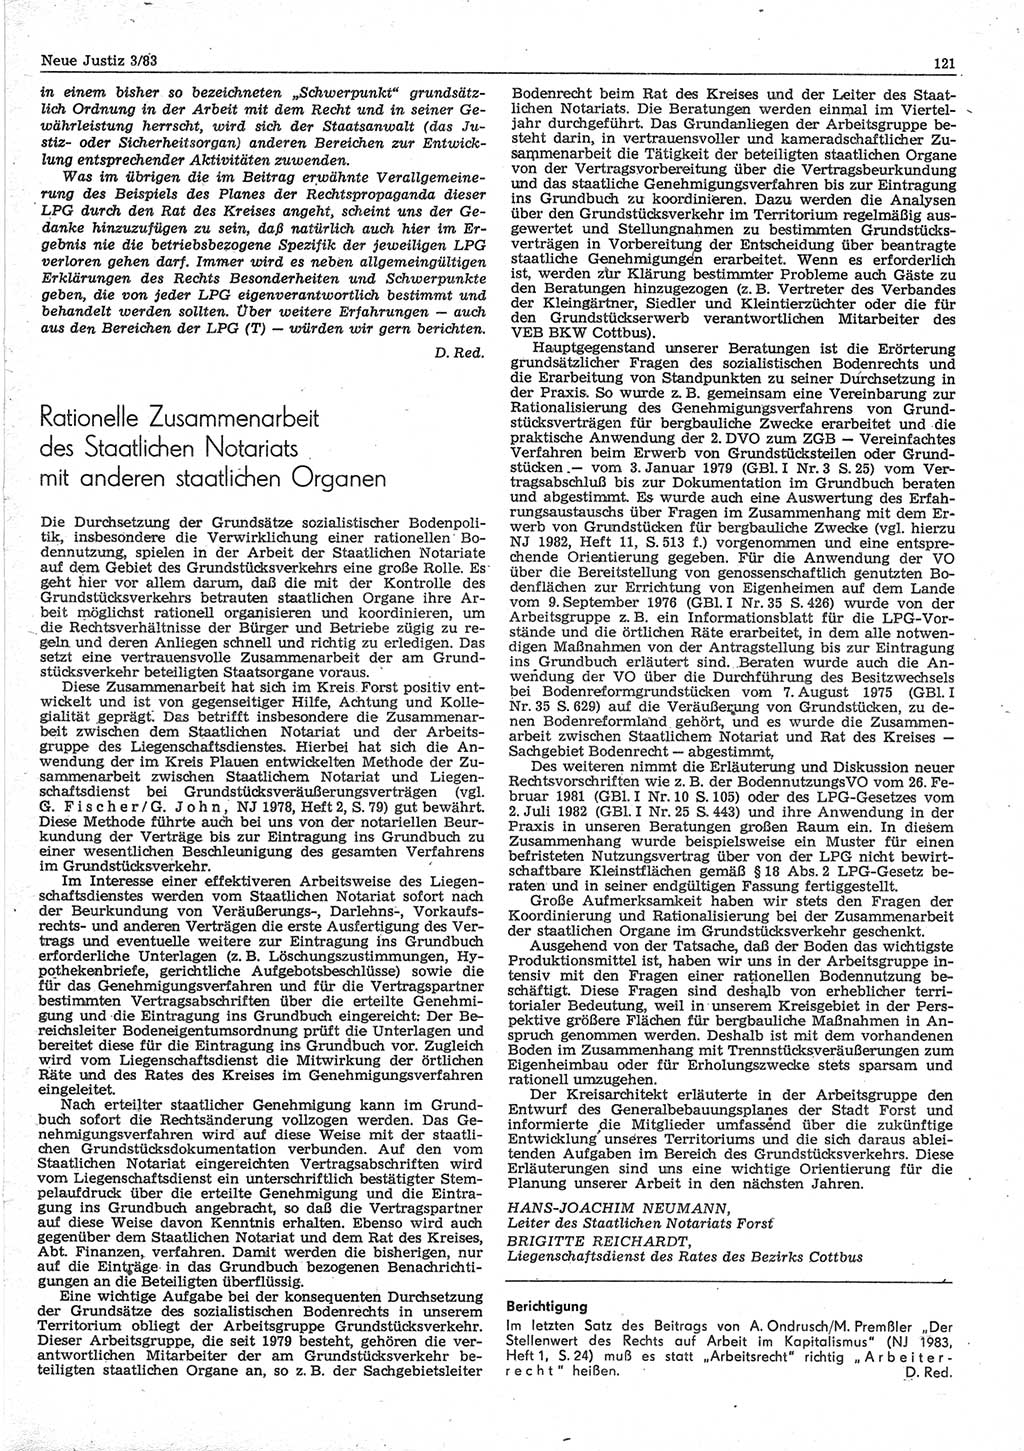 Neue Justiz (NJ), Zeitschrift für sozialistisches Recht und Gesetzlichkeit [Deutsche Demokratische Republik (DDR)], 37. Jahrgang 1983, Seite 121 (NJ DDR 1983, S. 121)